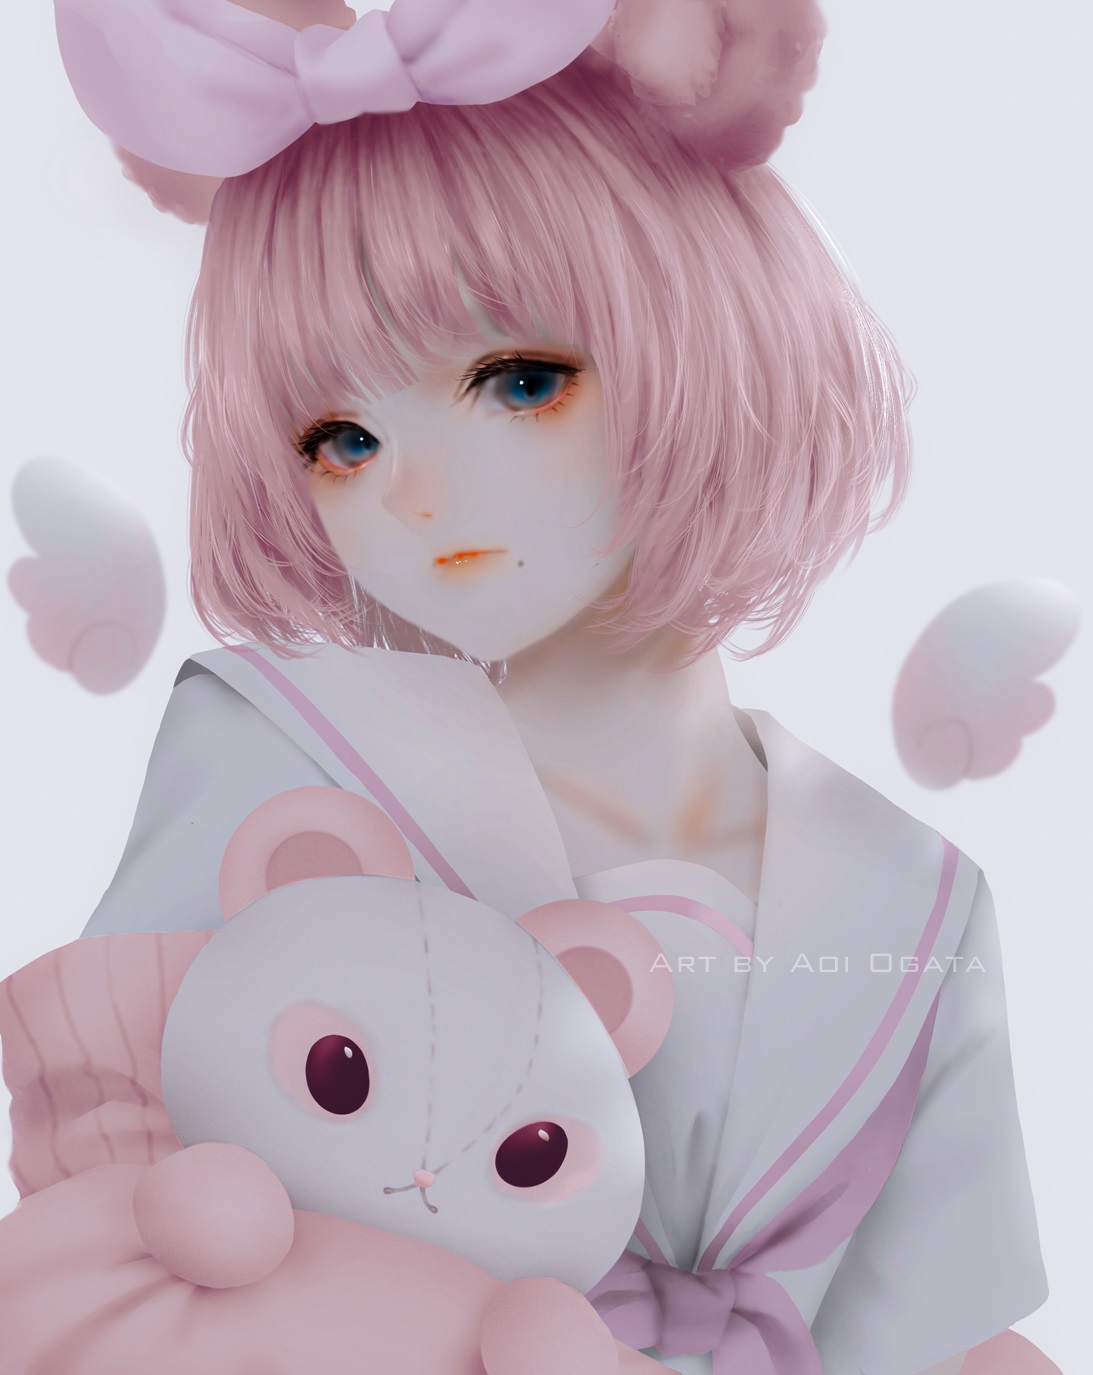 Anime 1093x1375 Aoi Ogata 2D anime girls portrait display teddy bears pink hair blue eyes